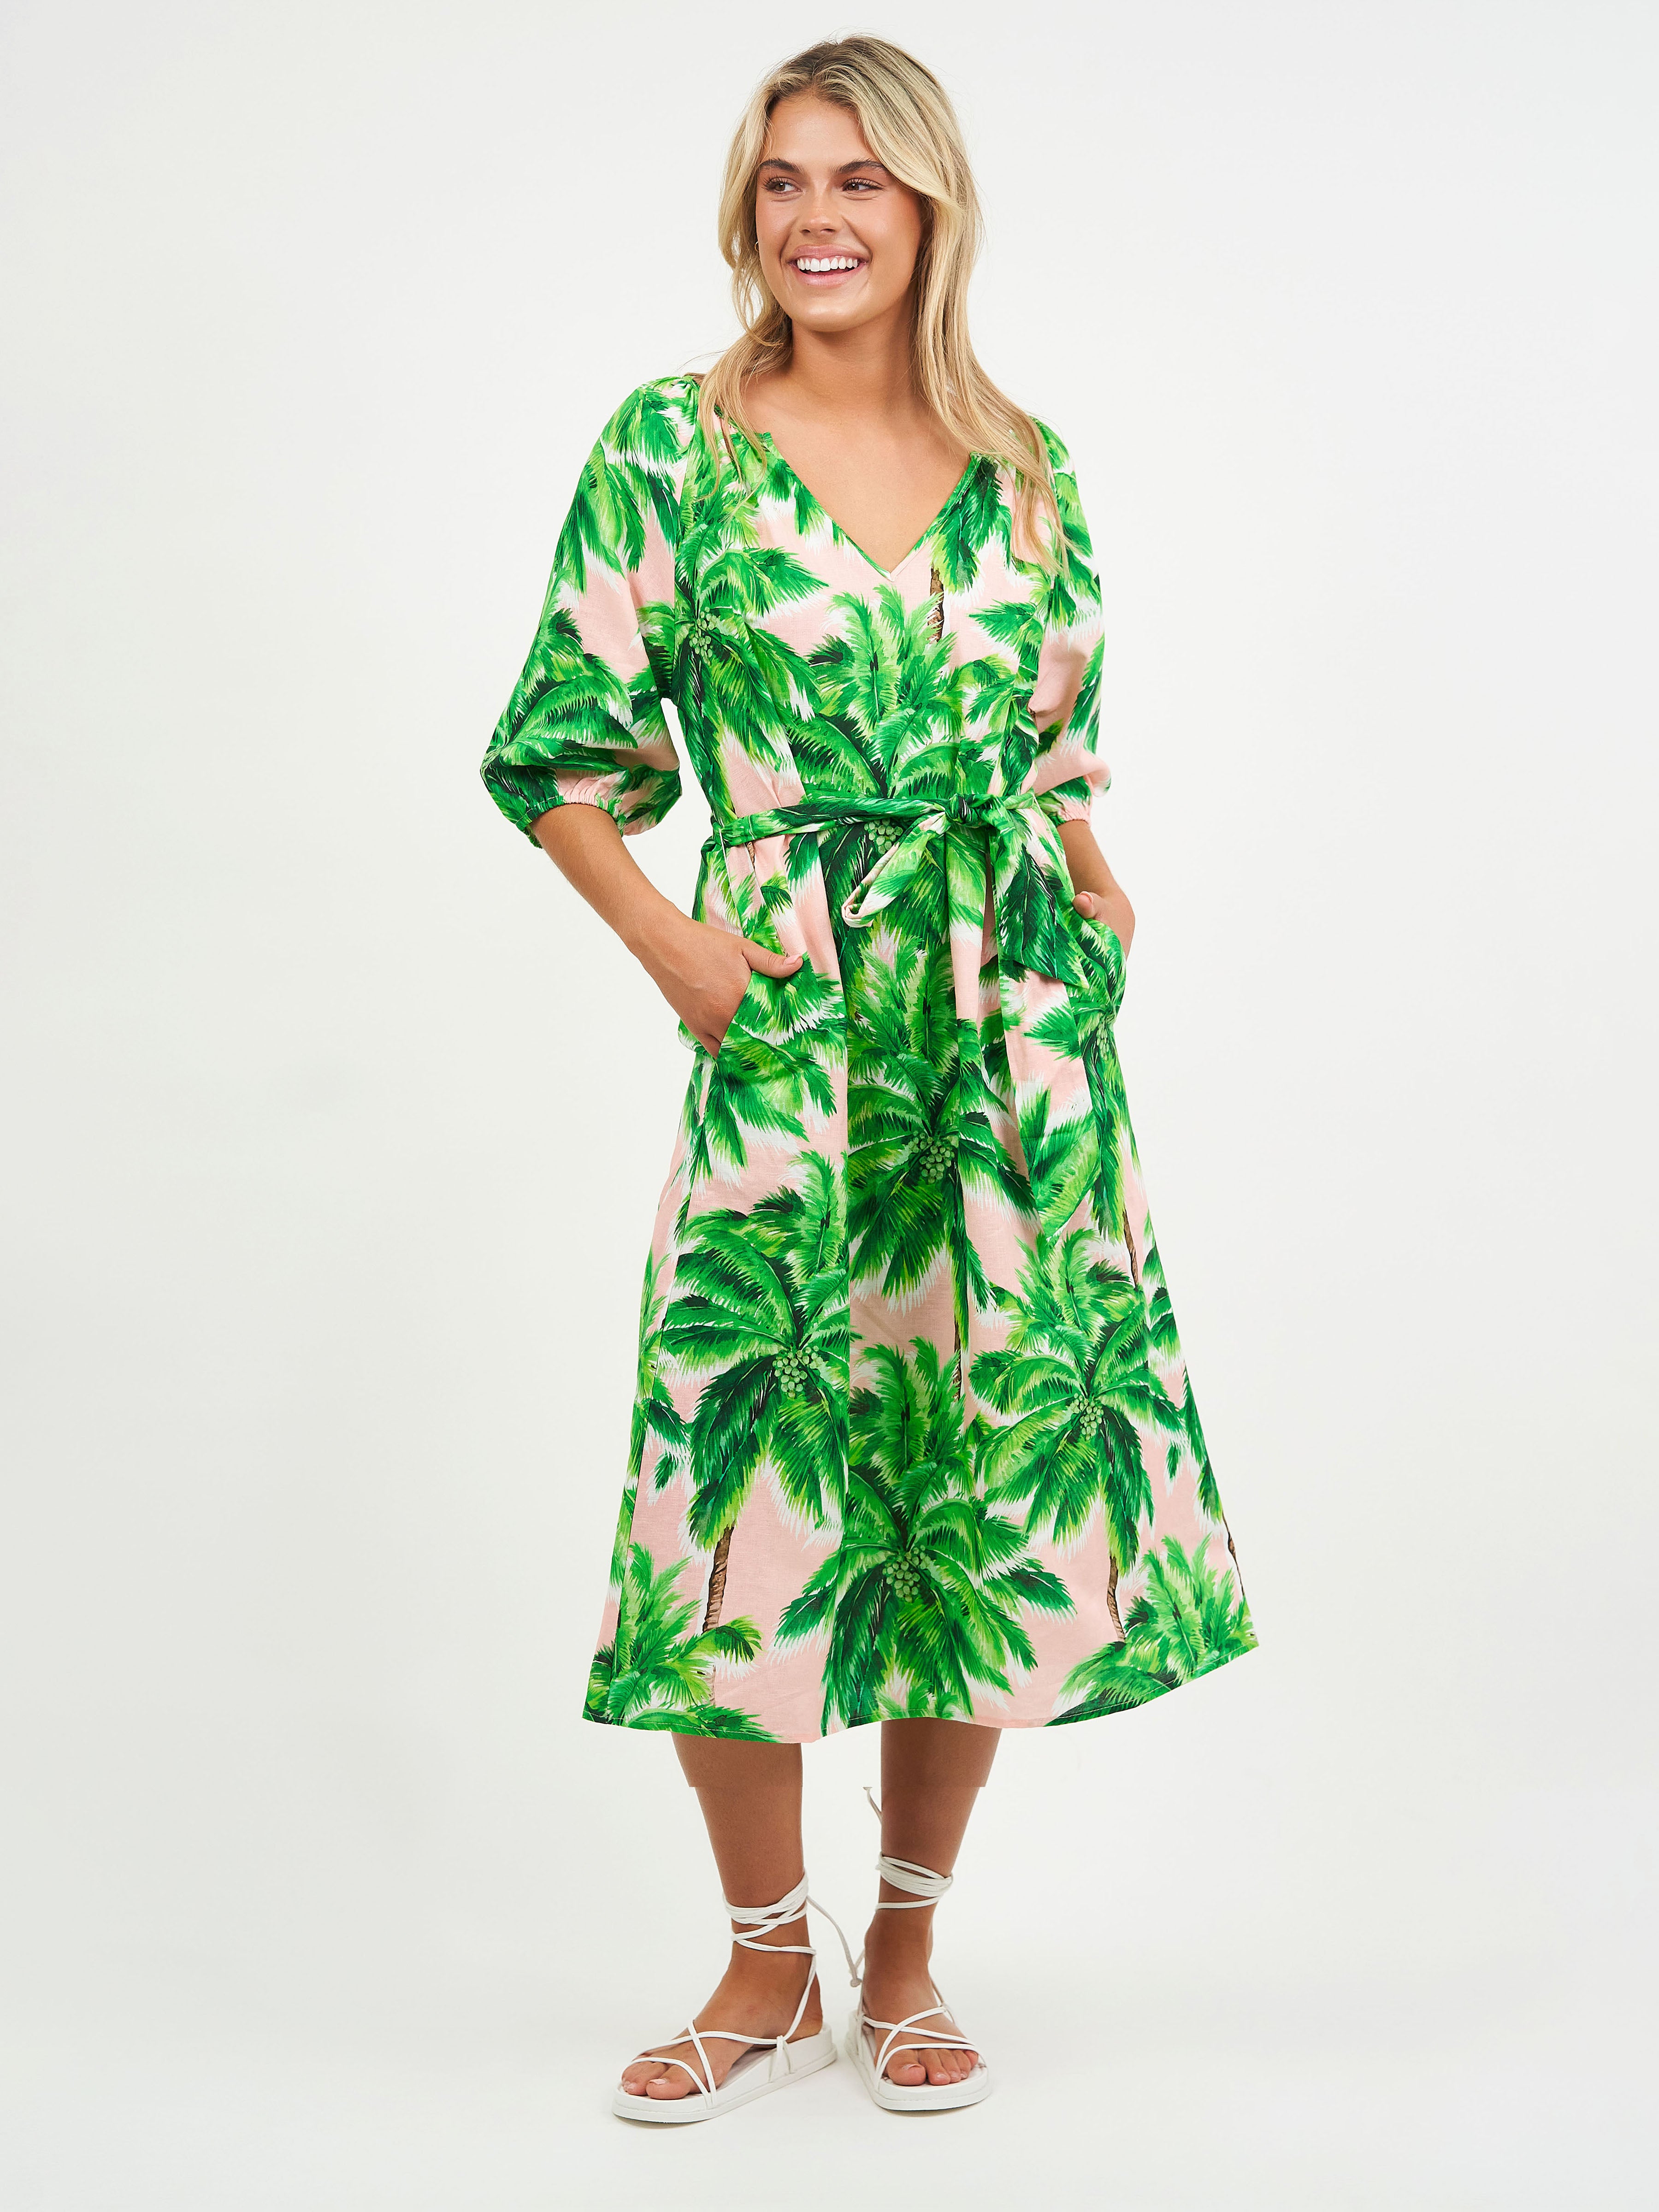 Liberty Rose Emerald Palm Print Linen Dress